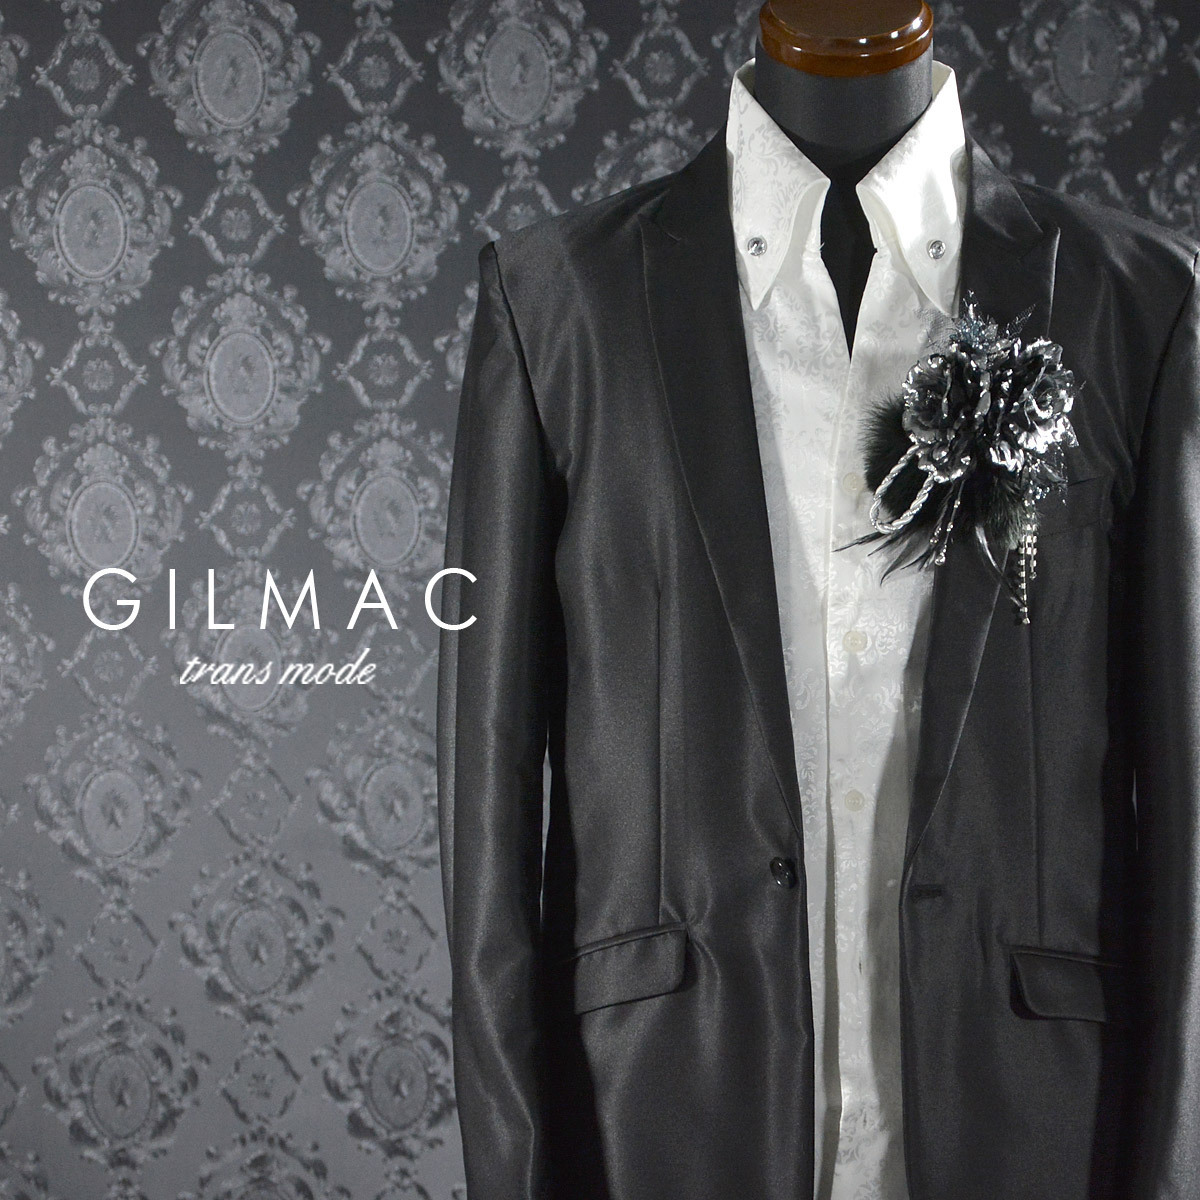 ◆k5704-2 GILMAC コサージュ 薔薇 フェザー ツイストロープ ブローチ メンズ(シルバーブラック黒) 大きめ 結婚式 パーティー 日本製 2way_画像3